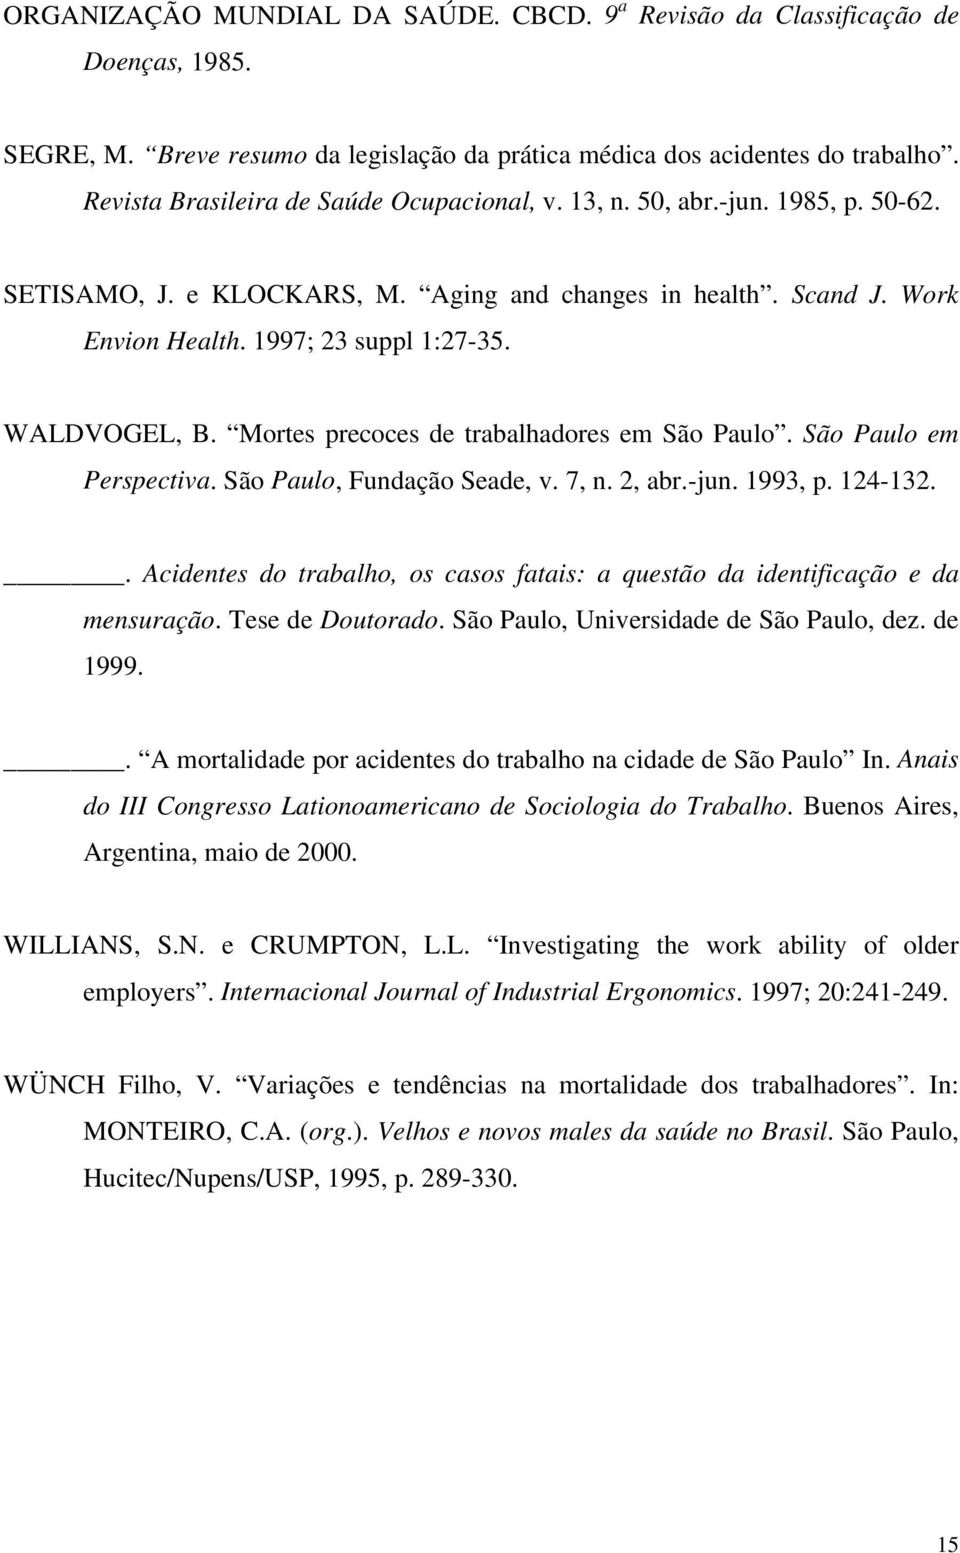 WALDVOGEL, B. Mortes precoces de trabalhadores em São Paulo. São Paulo em Perspectiva. São Paulo, Fundação Seade, v. 7, n. 2, abr.-jun. 1993, p. 124-132.